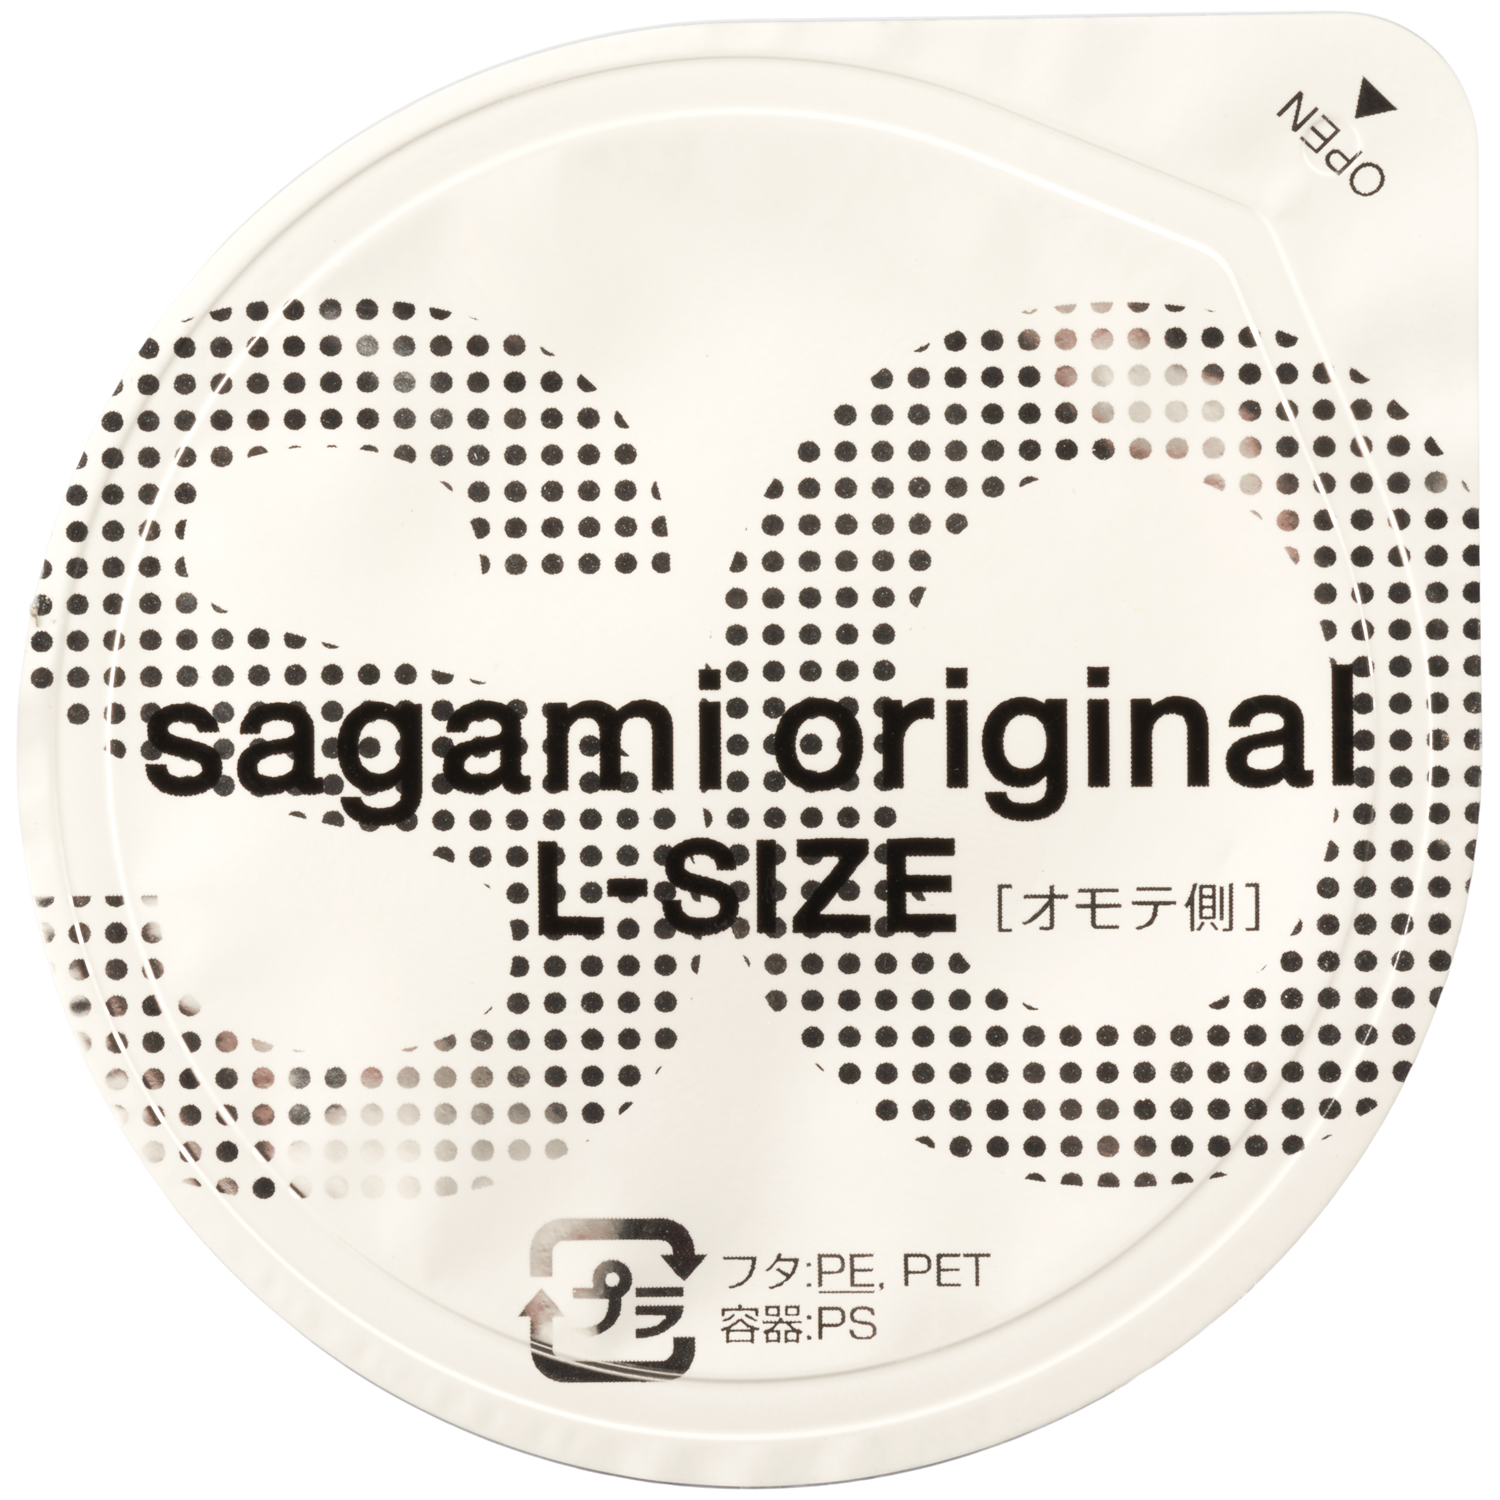 Sagami Original Large Latexfrie Kondomer 6 Pack